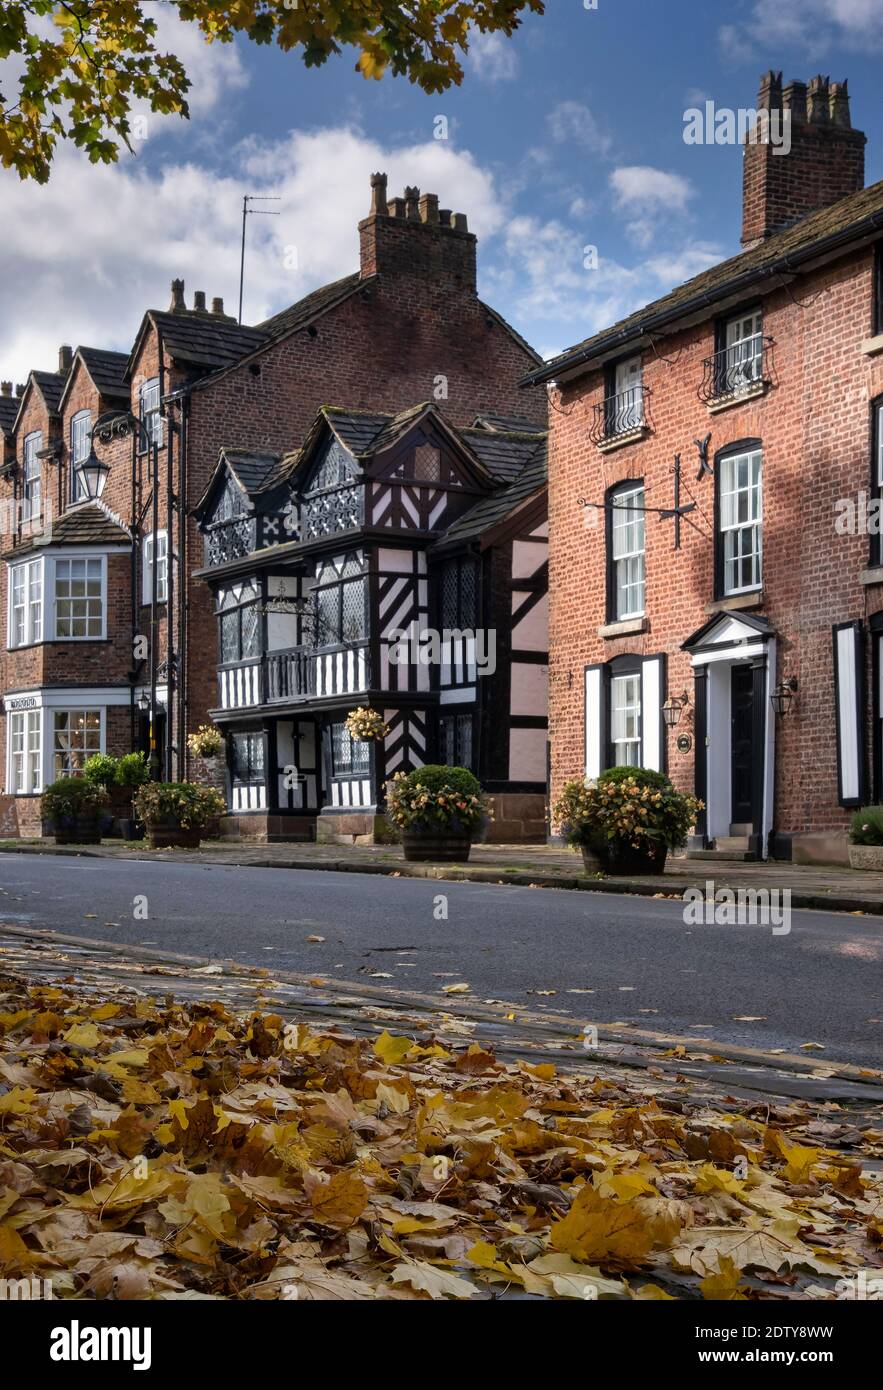 La madera blanca y negra enmarcada casa de sacerdotes en otoño, Prestbury, Cheshire, Inglaterra, Reino Unido Foto de stock